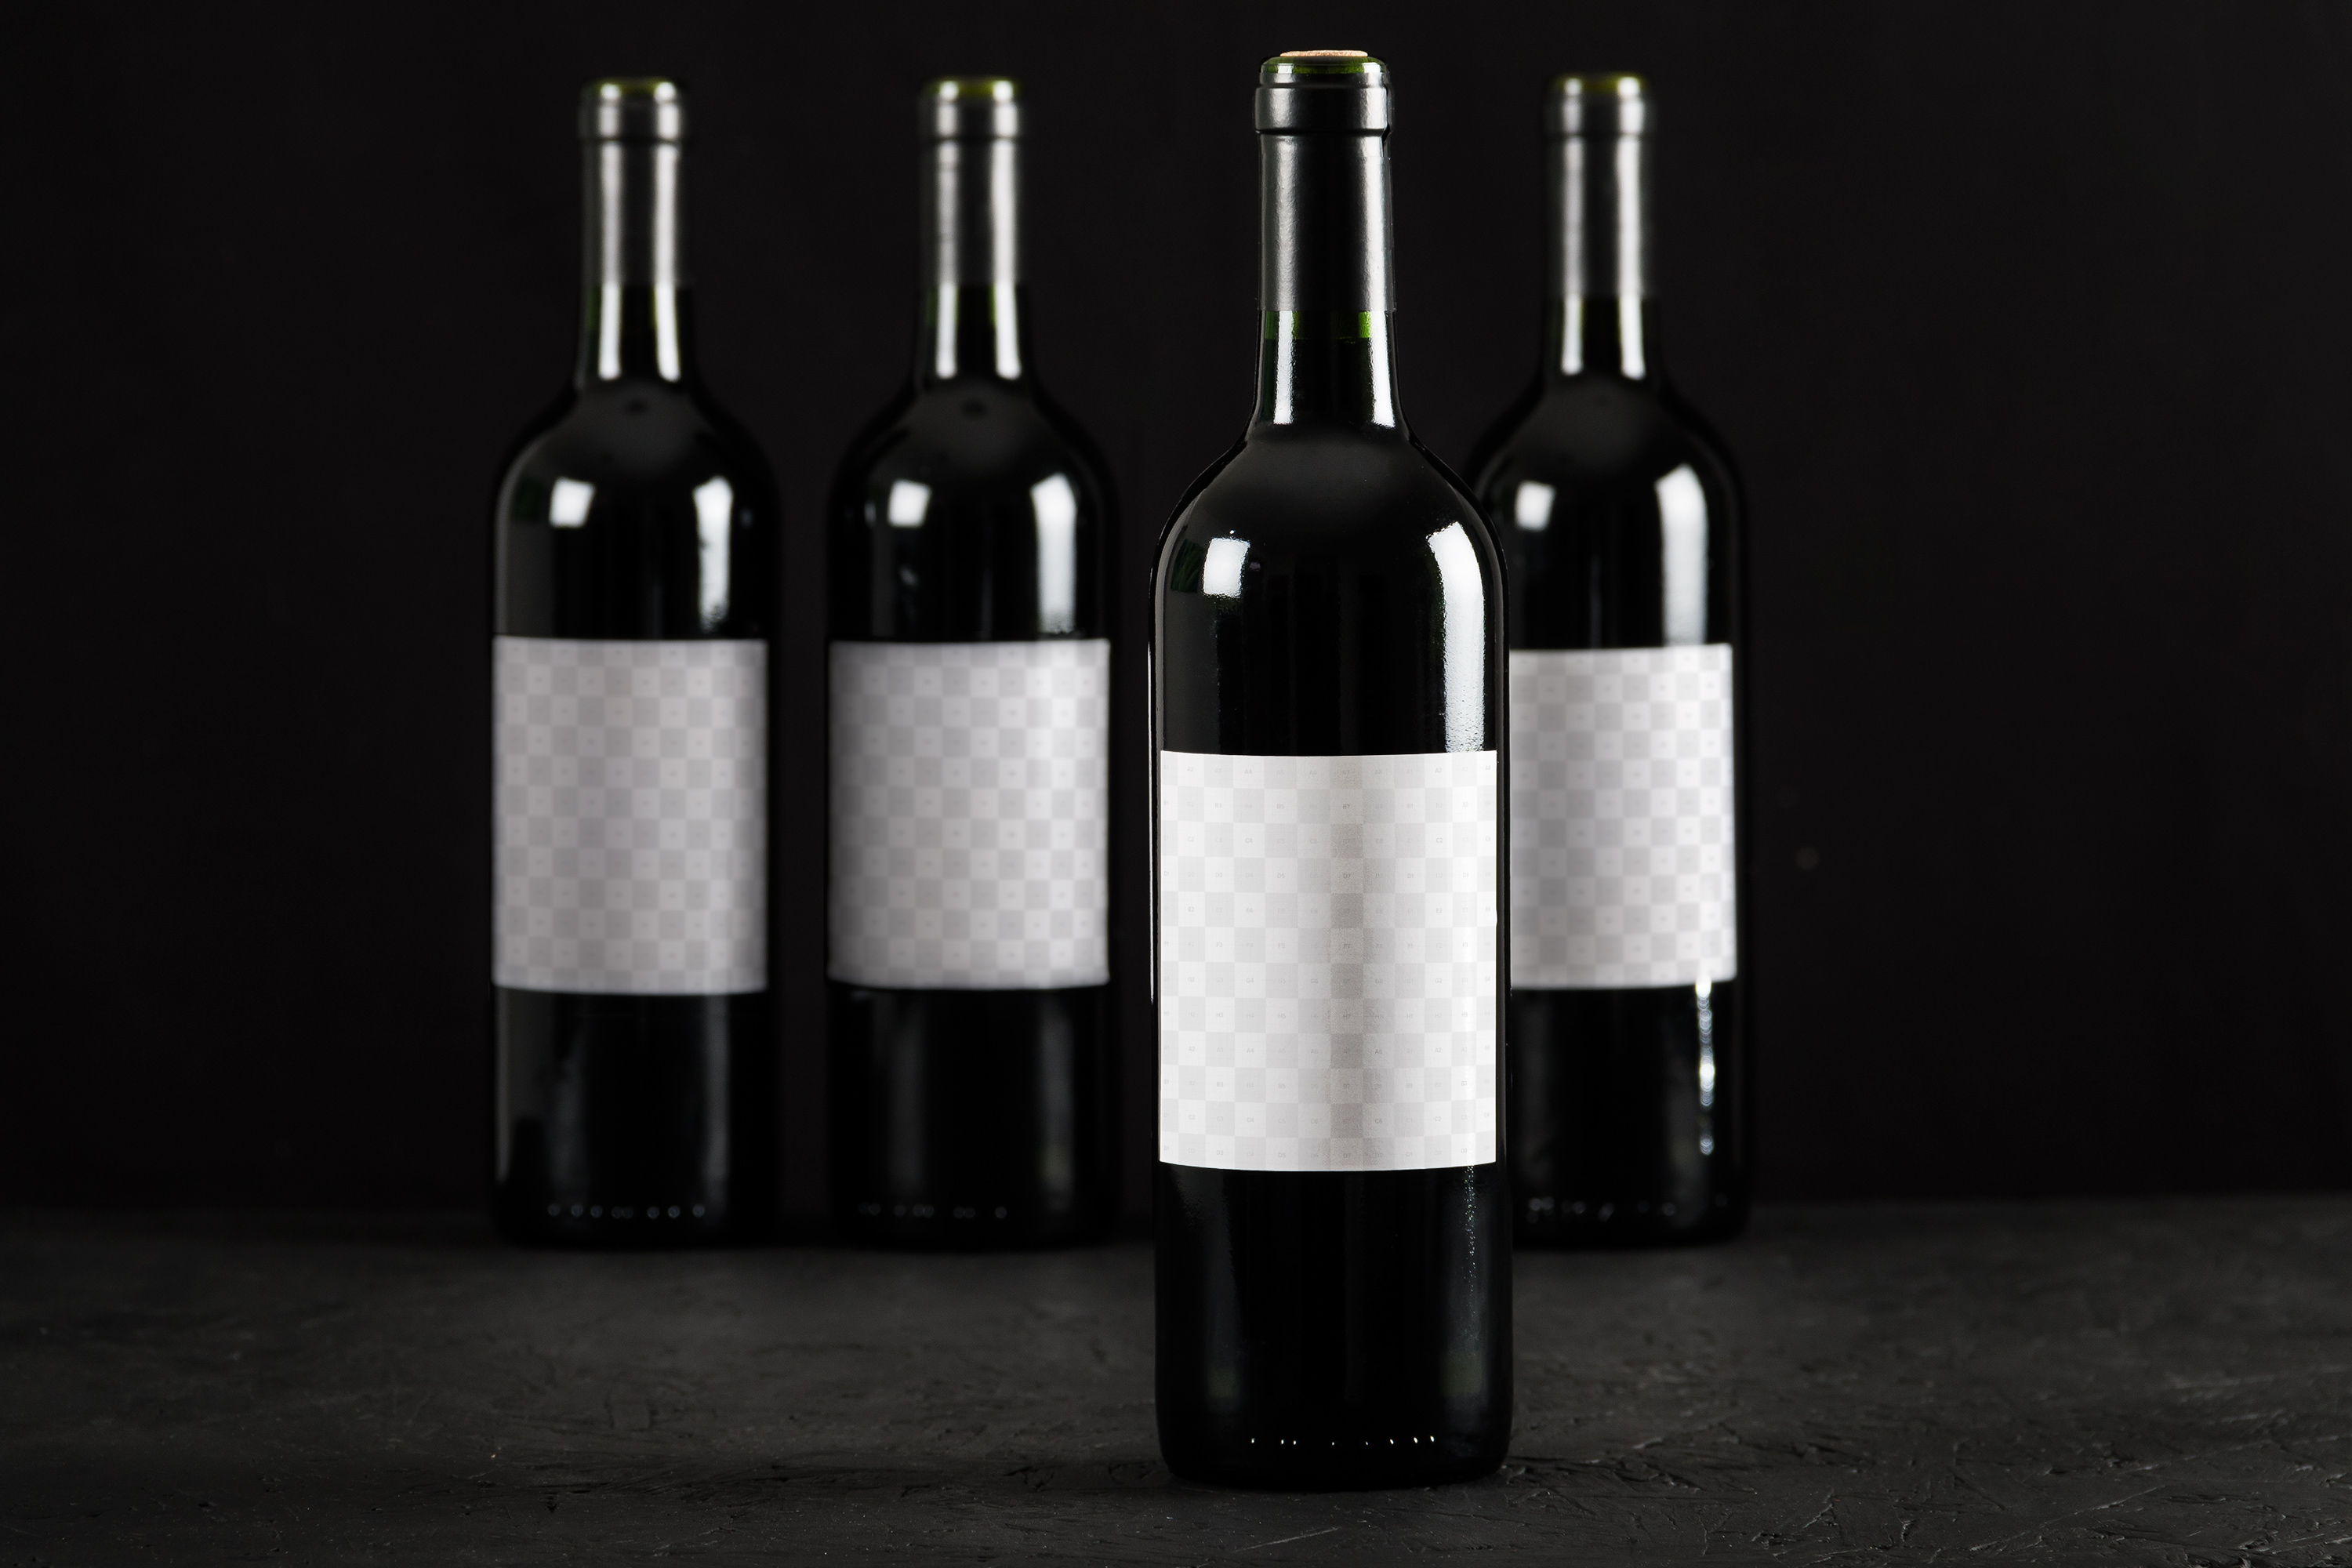 葡萄酒酒瓶设计效果图样机模板03 Wine Bottle Mockup 03插图(1)